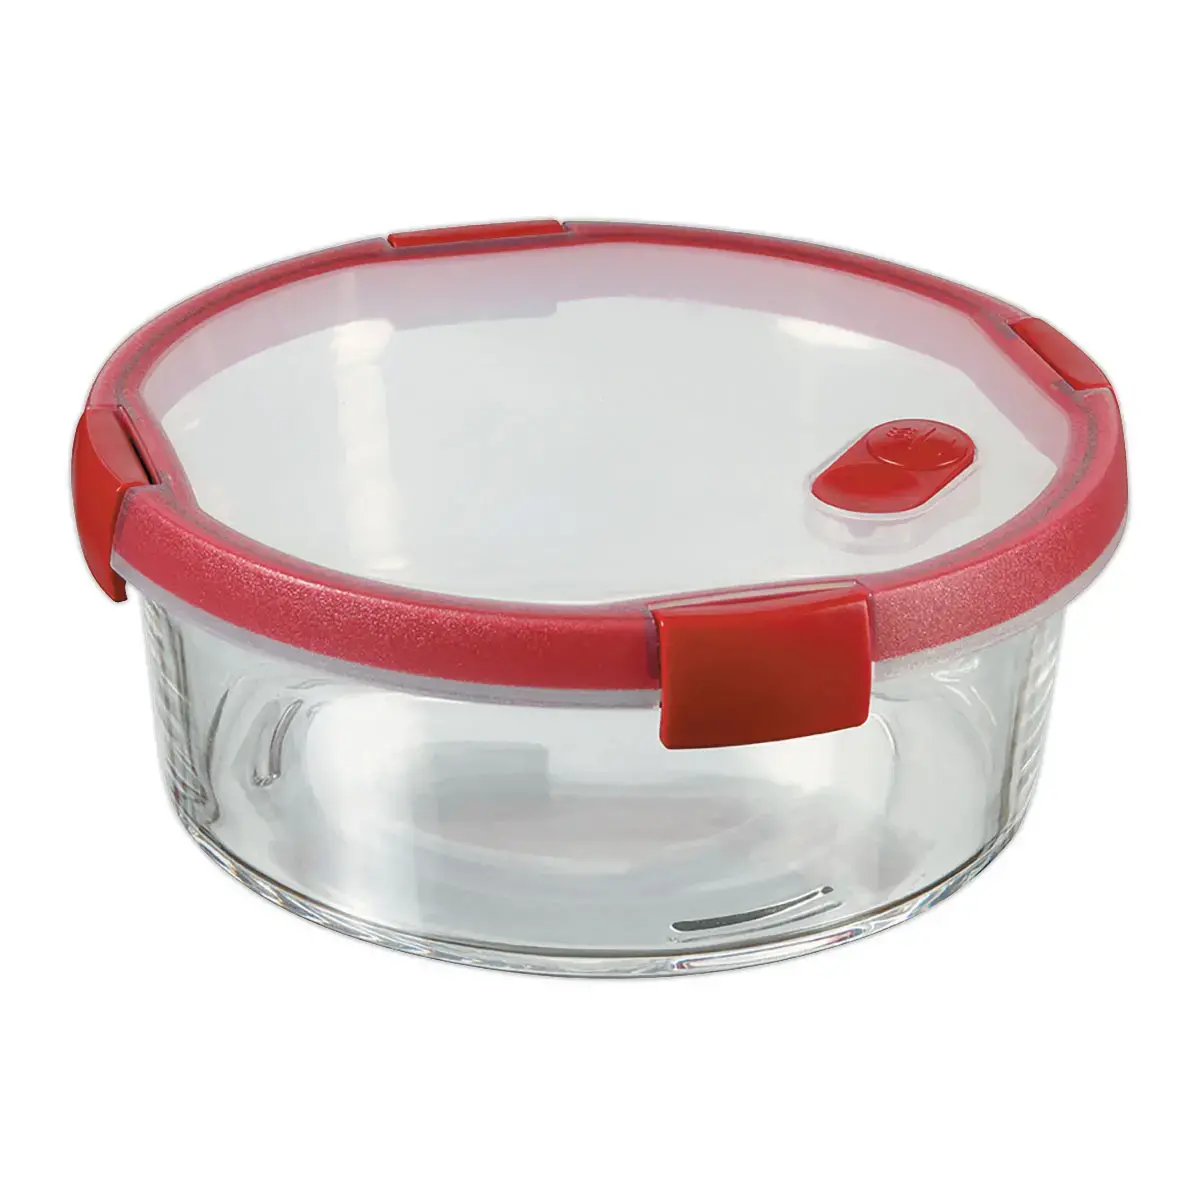 Boite alimentaire en verre ronde 1,2L CURVER rouge - Assiettes réutilisables